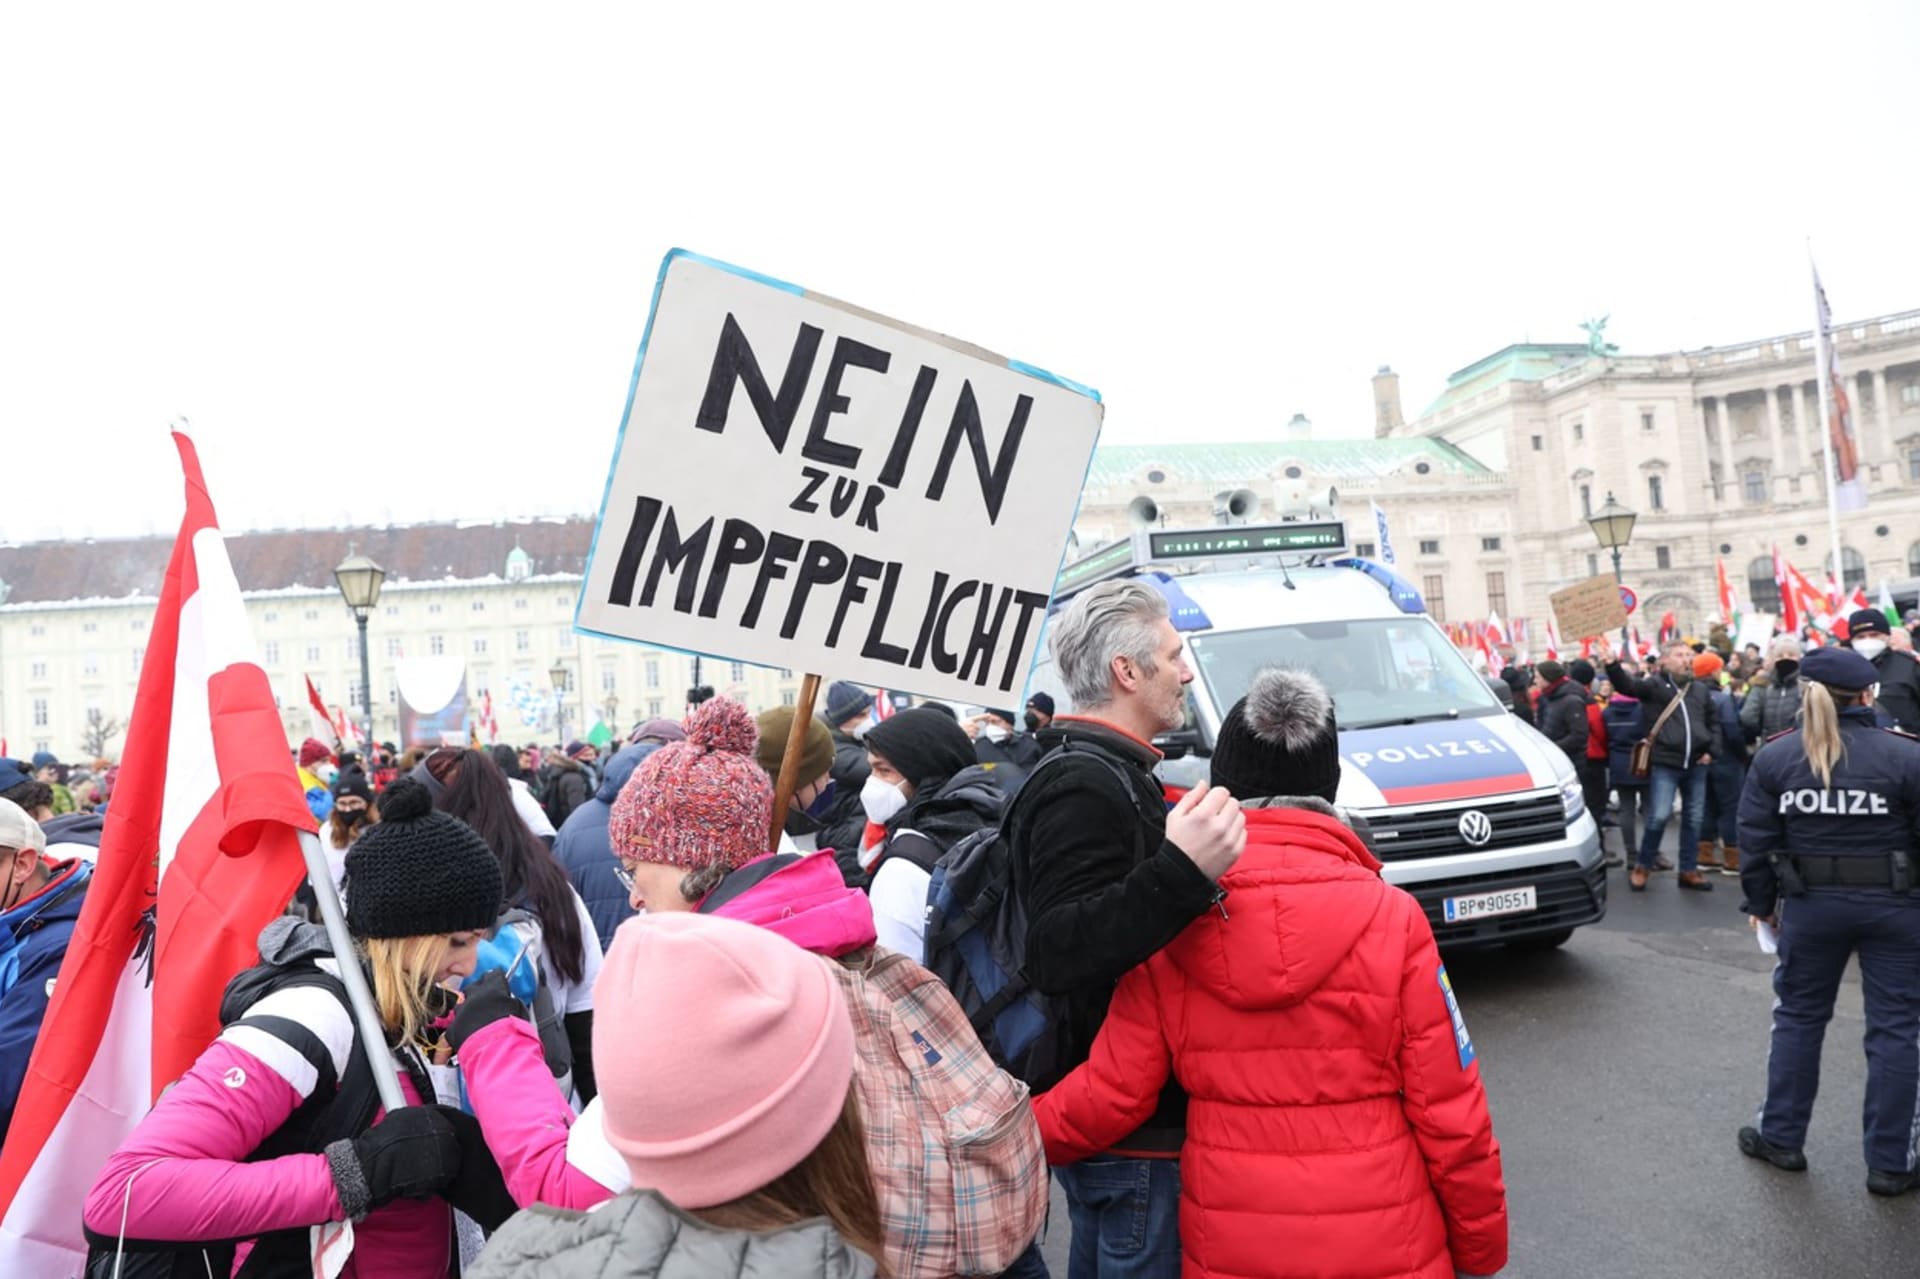 Sobotní demonstrace ve Vídni proti koronavirovým opatřením a povinnému očkování se zúčastnilo na 44 tisíc lidí